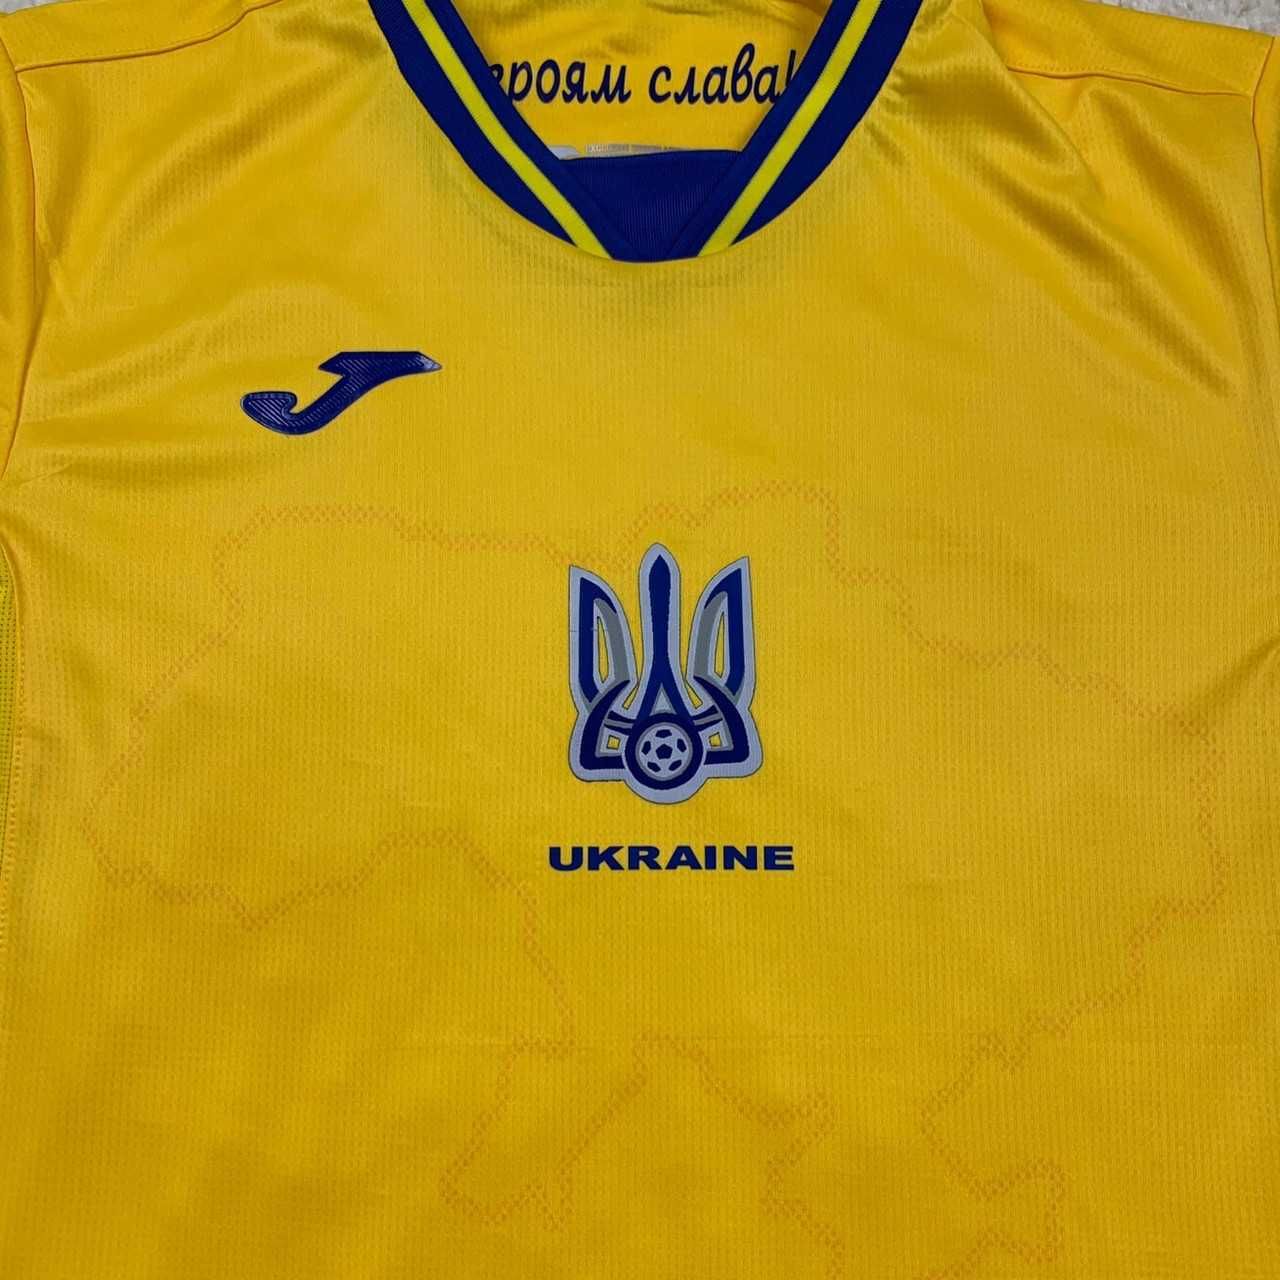 Футбольная форма сборной Украины, основная.